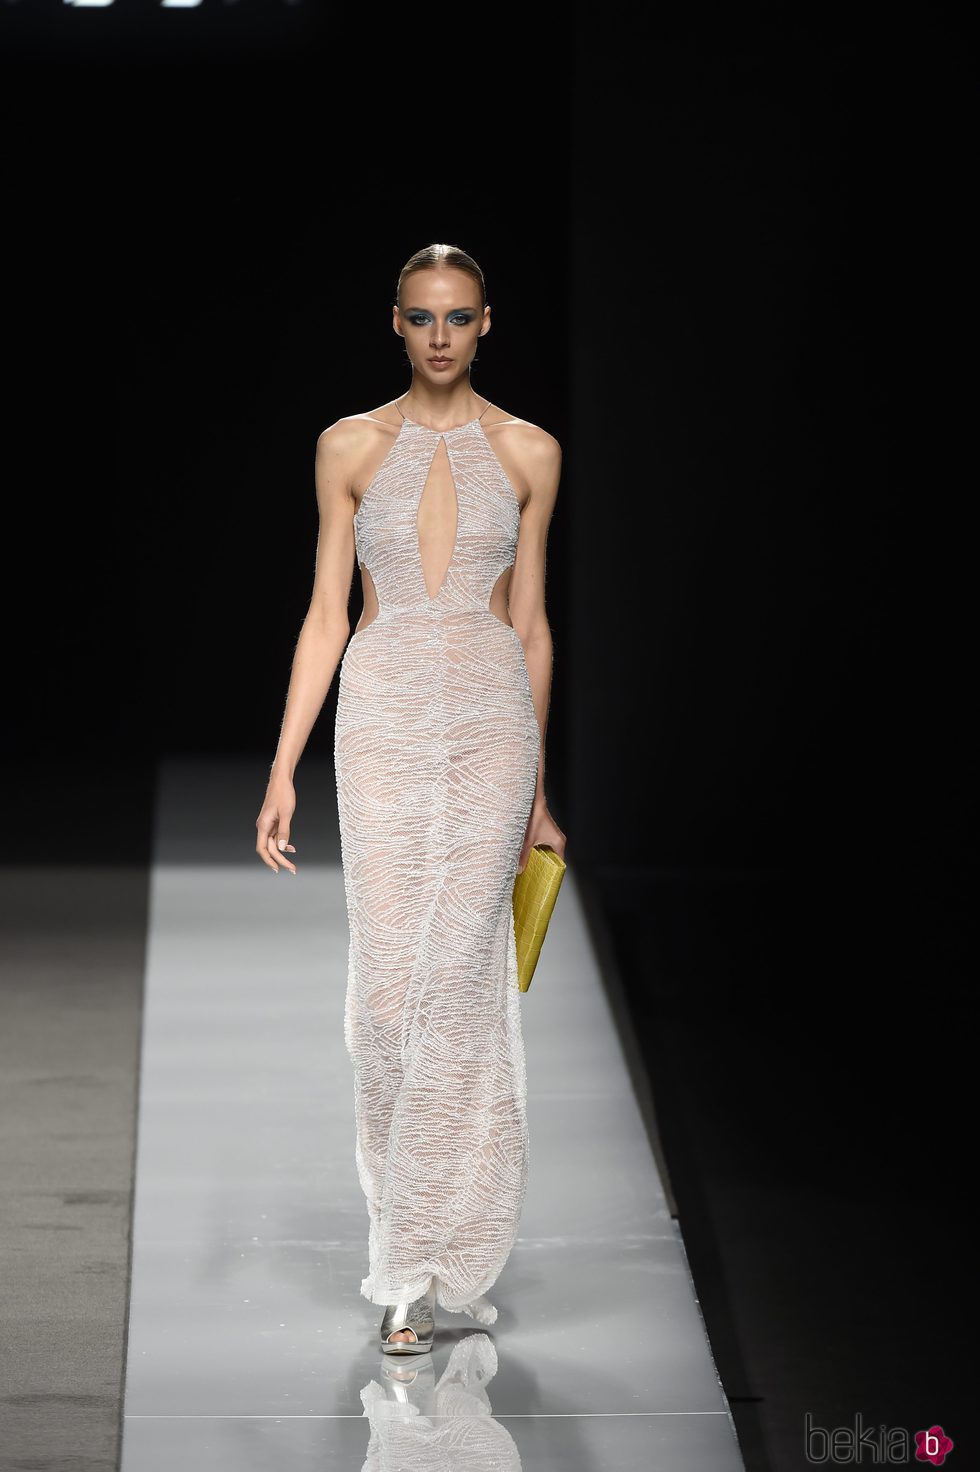 Vestido largo gris transparente con cartera amarilla y zapatos plateados de Felipe Varela colección primavera/verano 2017 en la Madrid Fashion Week